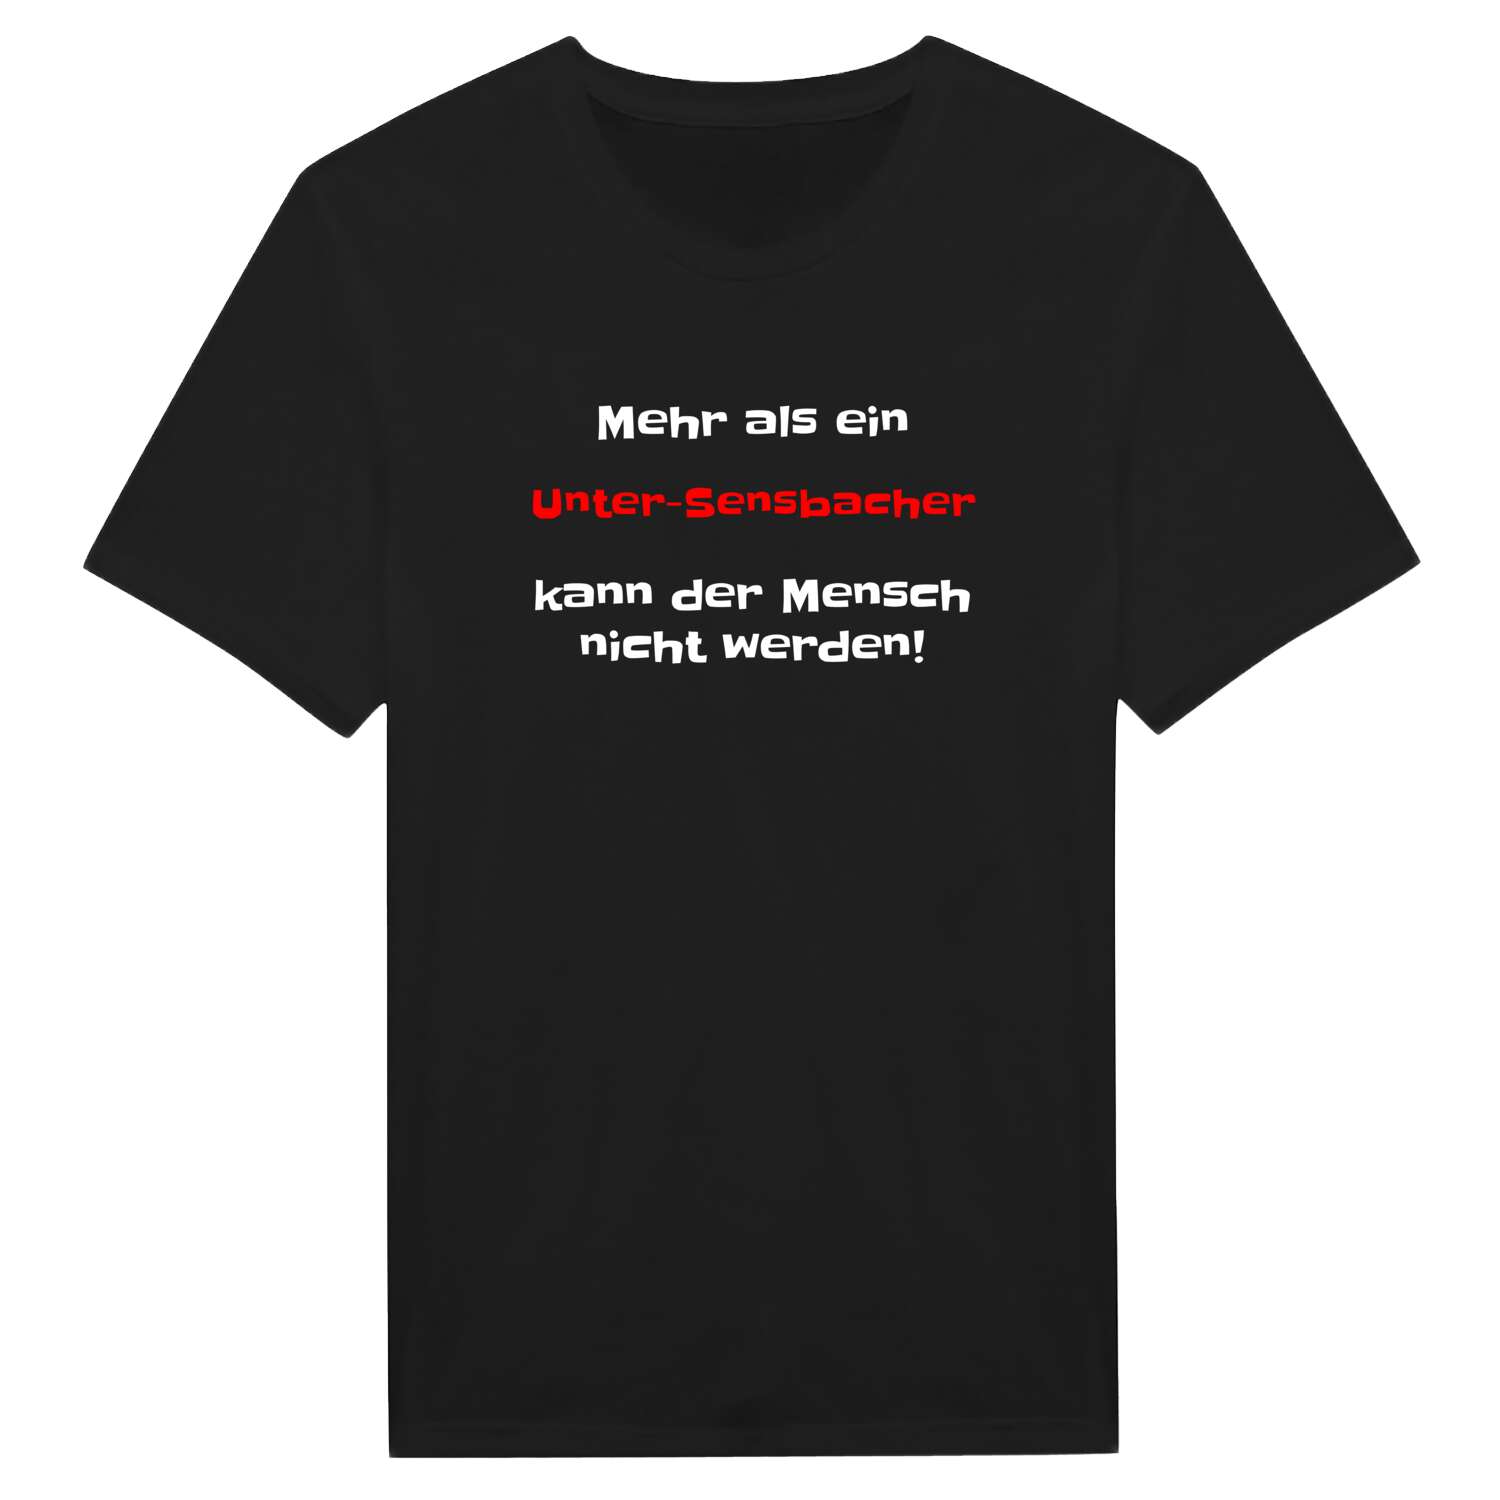 Unter-Sensbach T-Shirt »Mehr als ein«